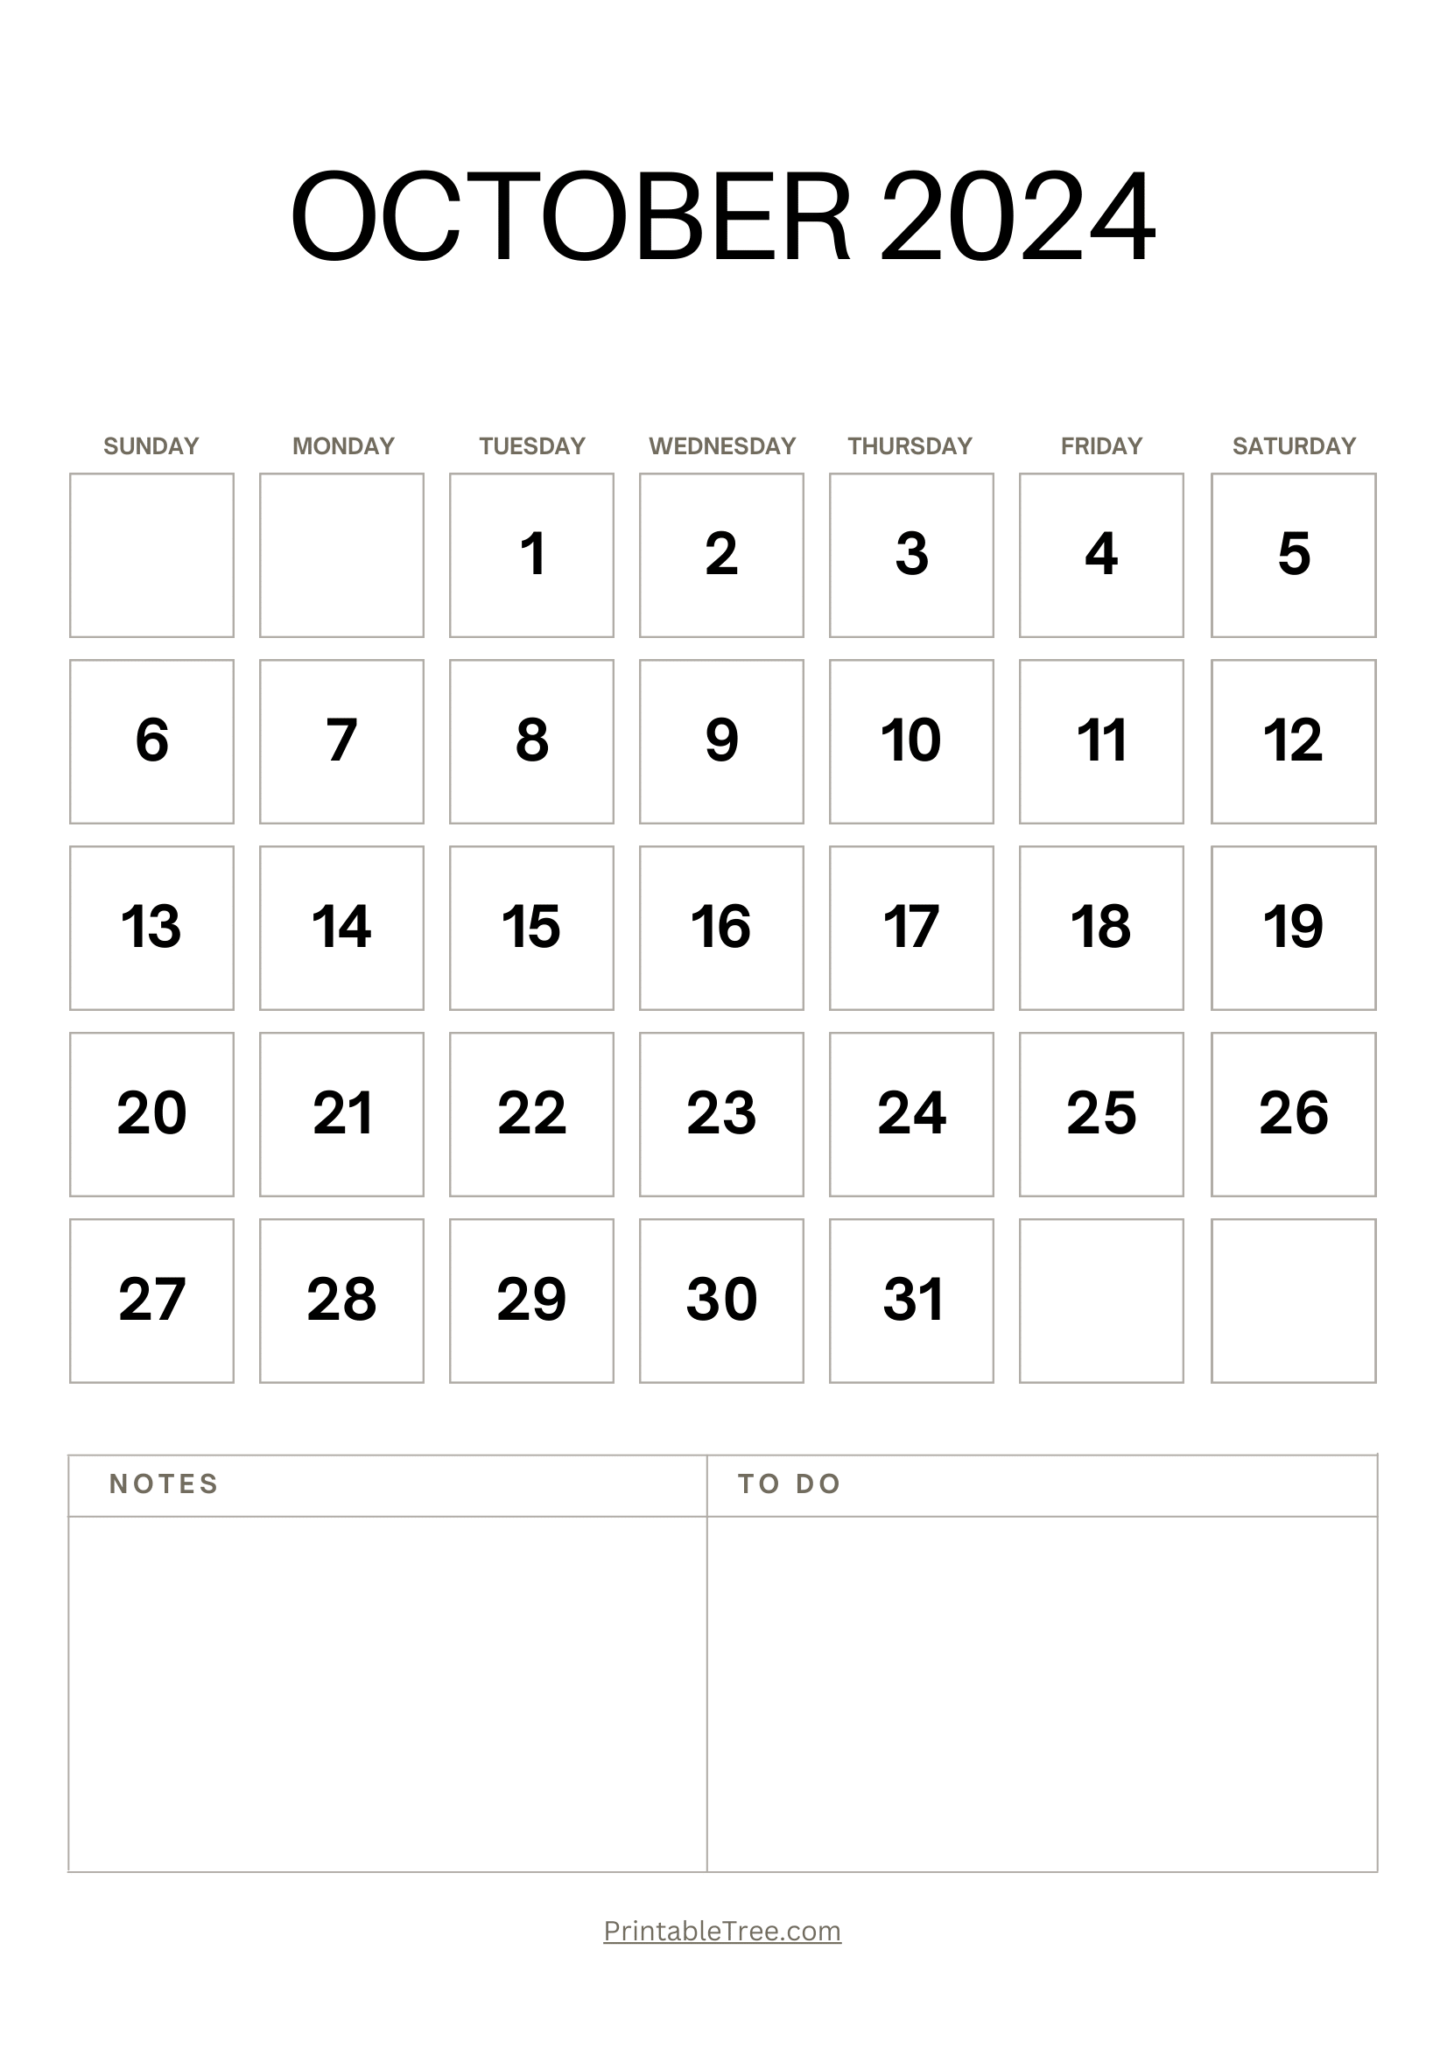 october-2024-printable-calendar